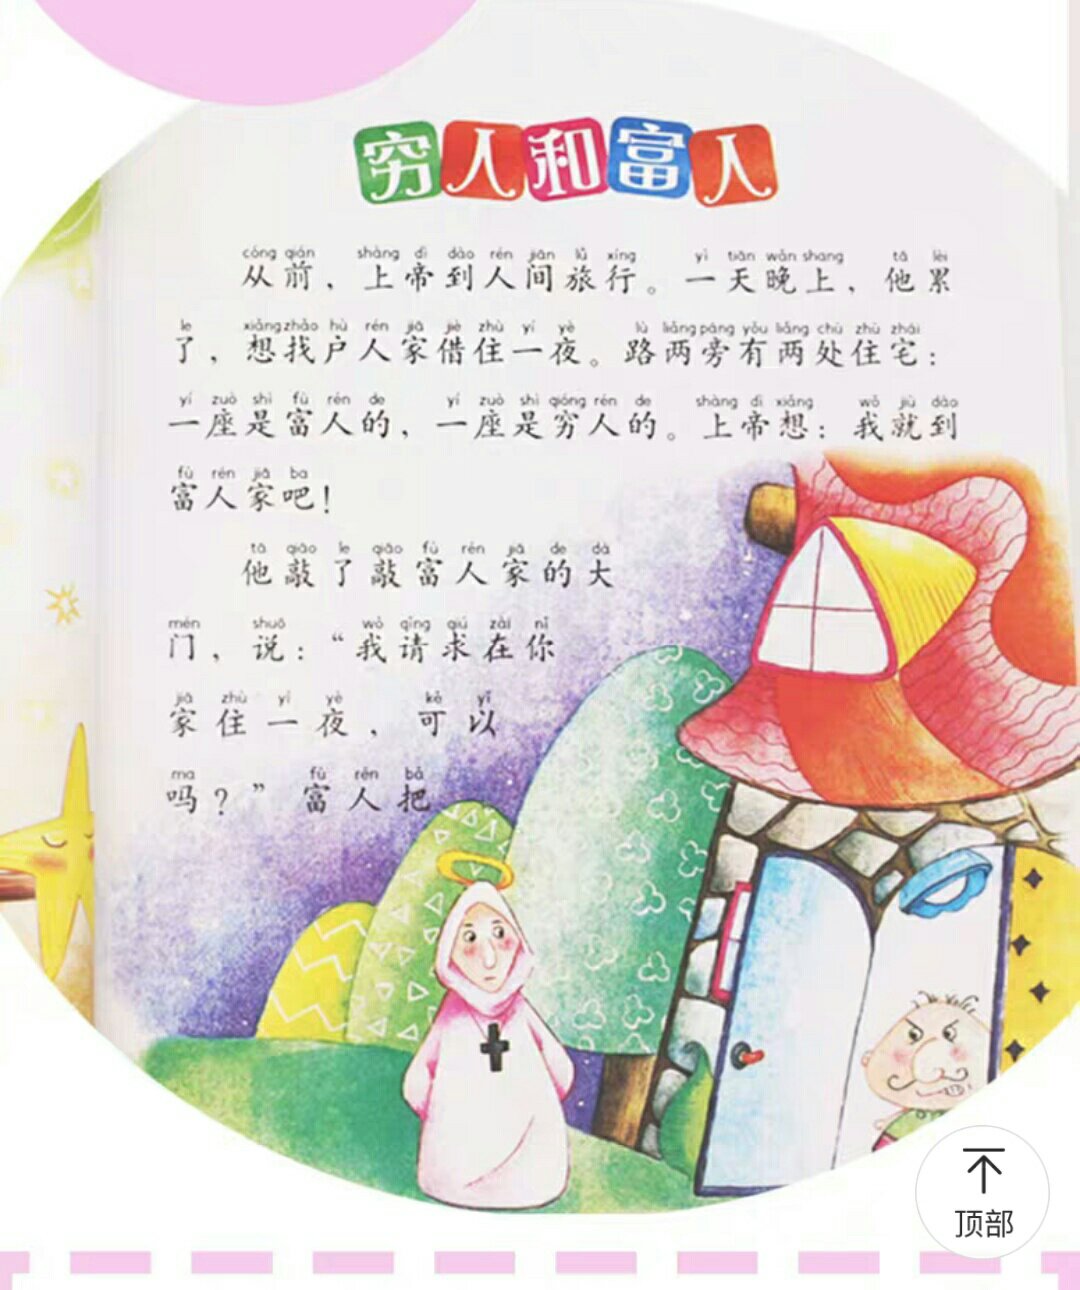 刚好赶上活动，所以先给孩子囤点书，虽然小朋友现在还看不了，但是可以念给他听，之后等他自己认识拼音的是汉字的，可以再次读。